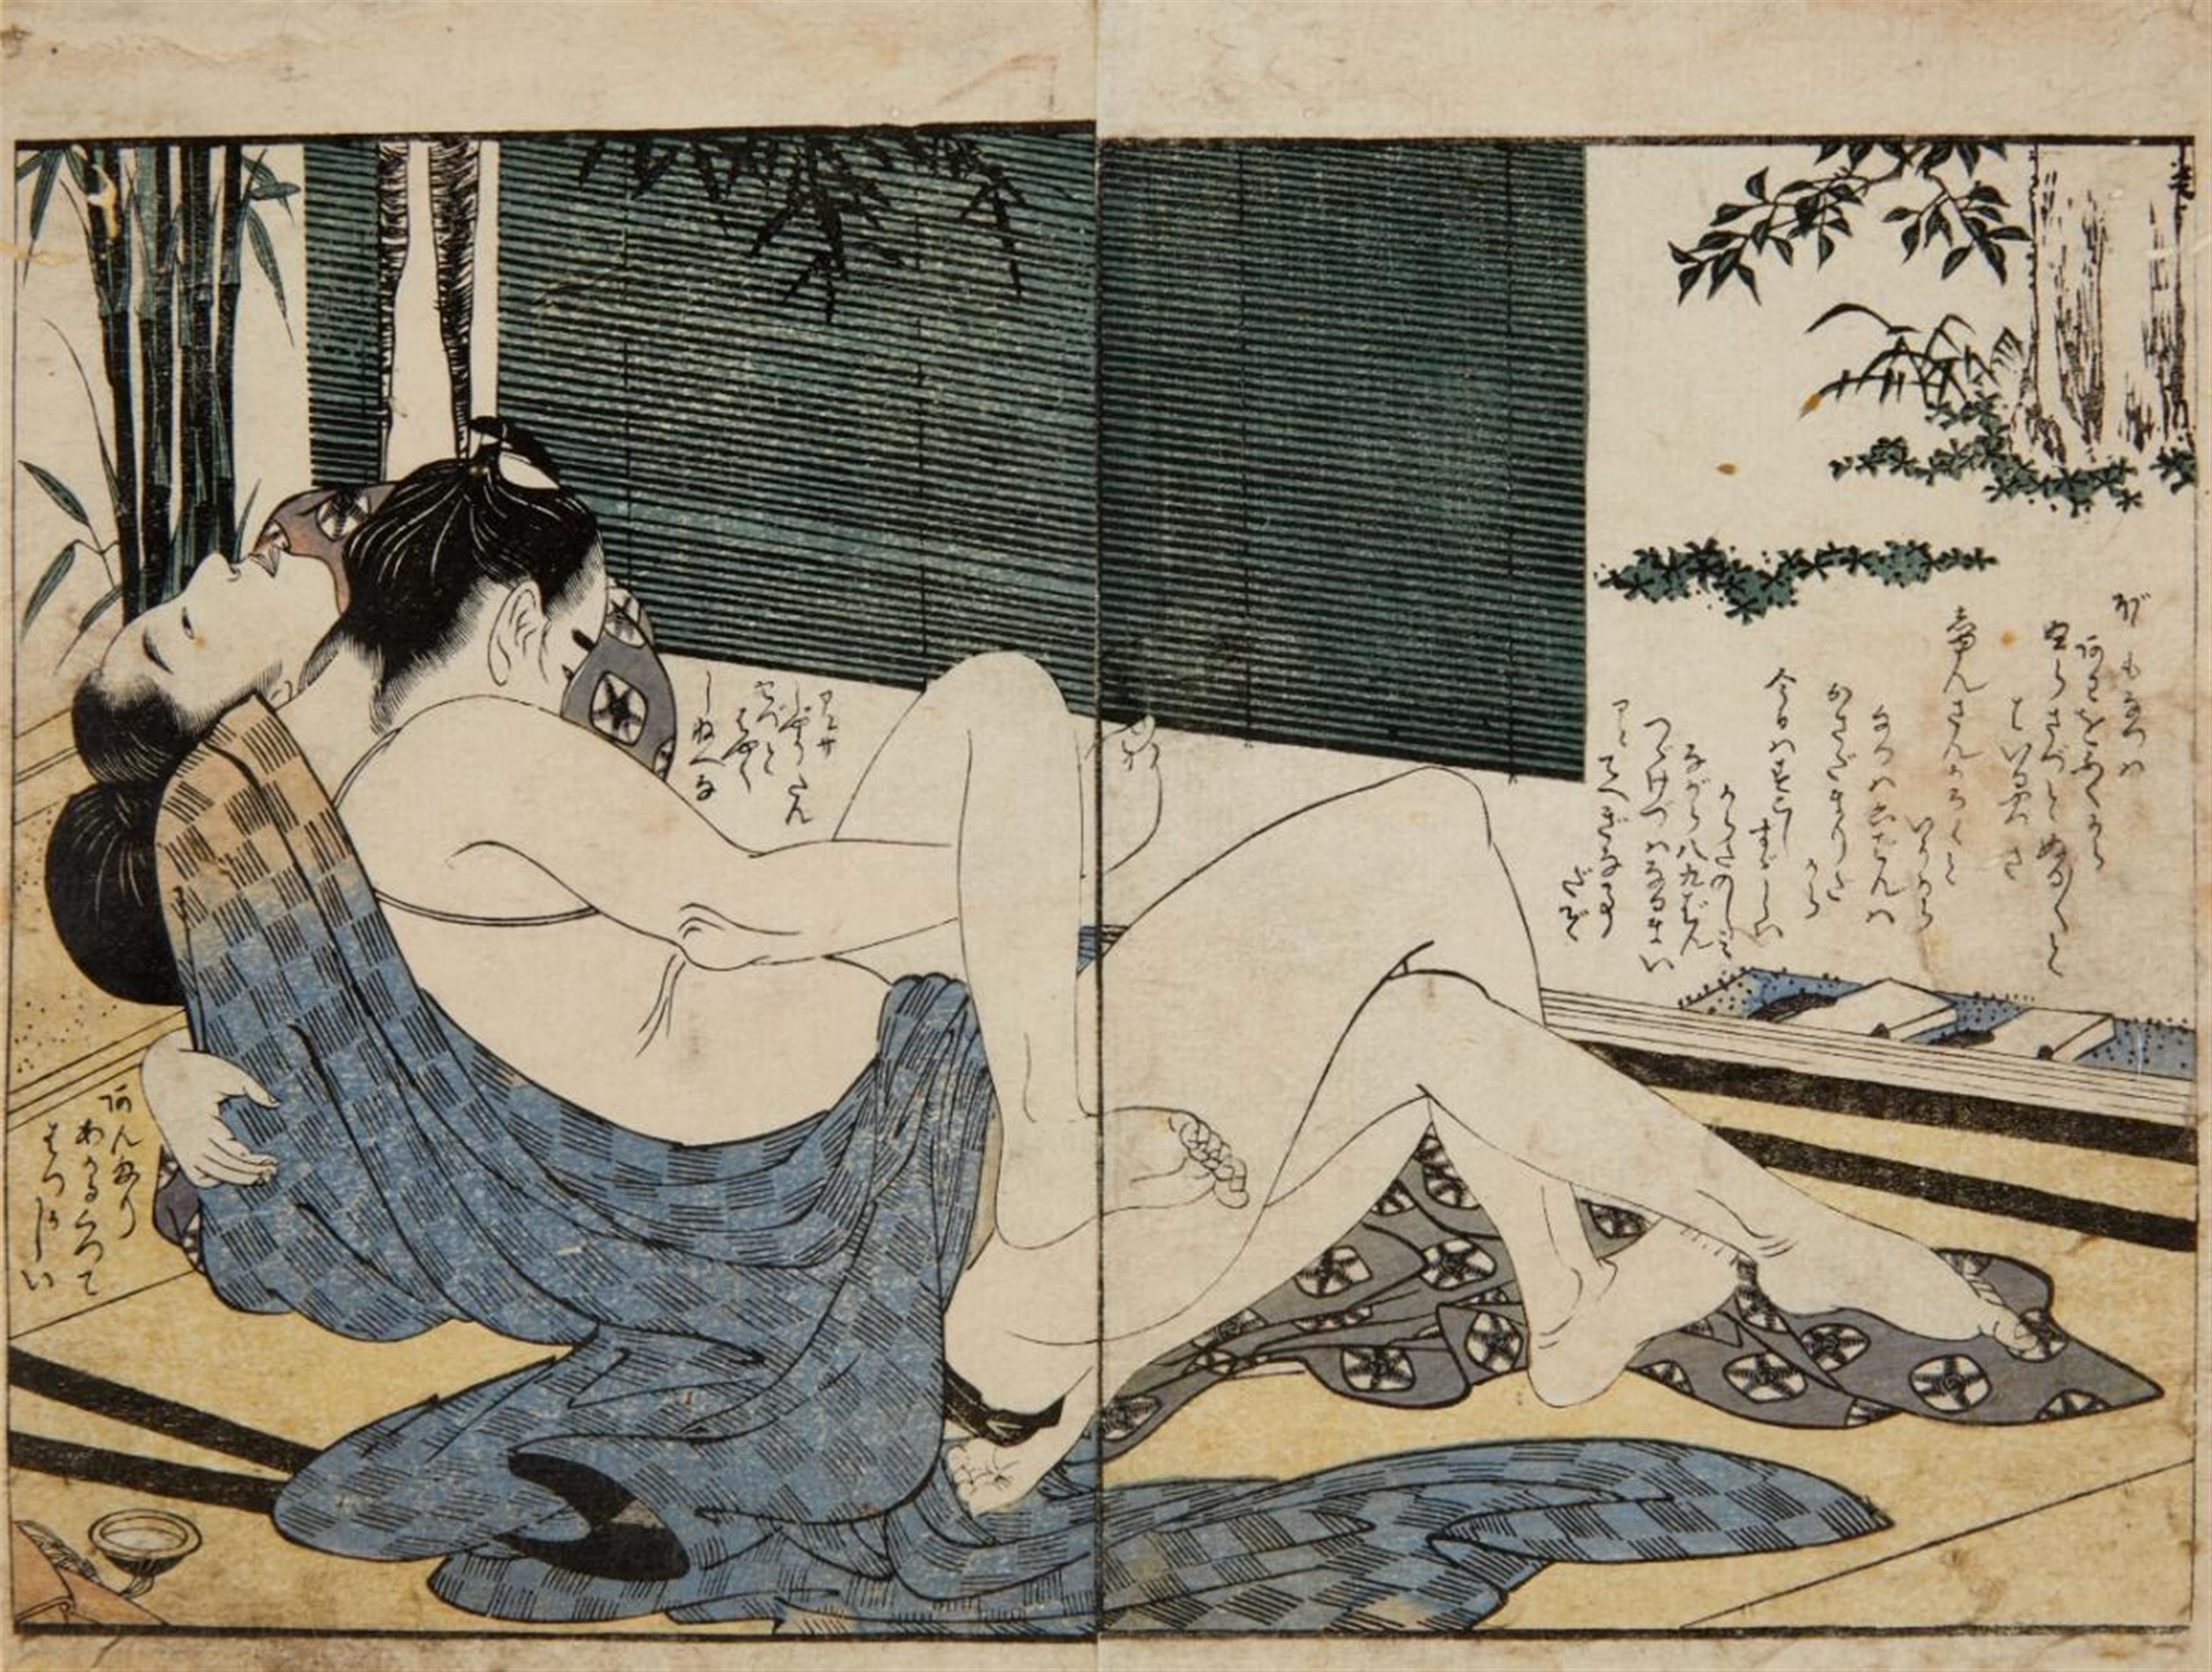 Kitagawa Utamaro
Various Artists - Kitagawa Utamaro (1753-1806) and various artists of the 18th and 19th century - image-3